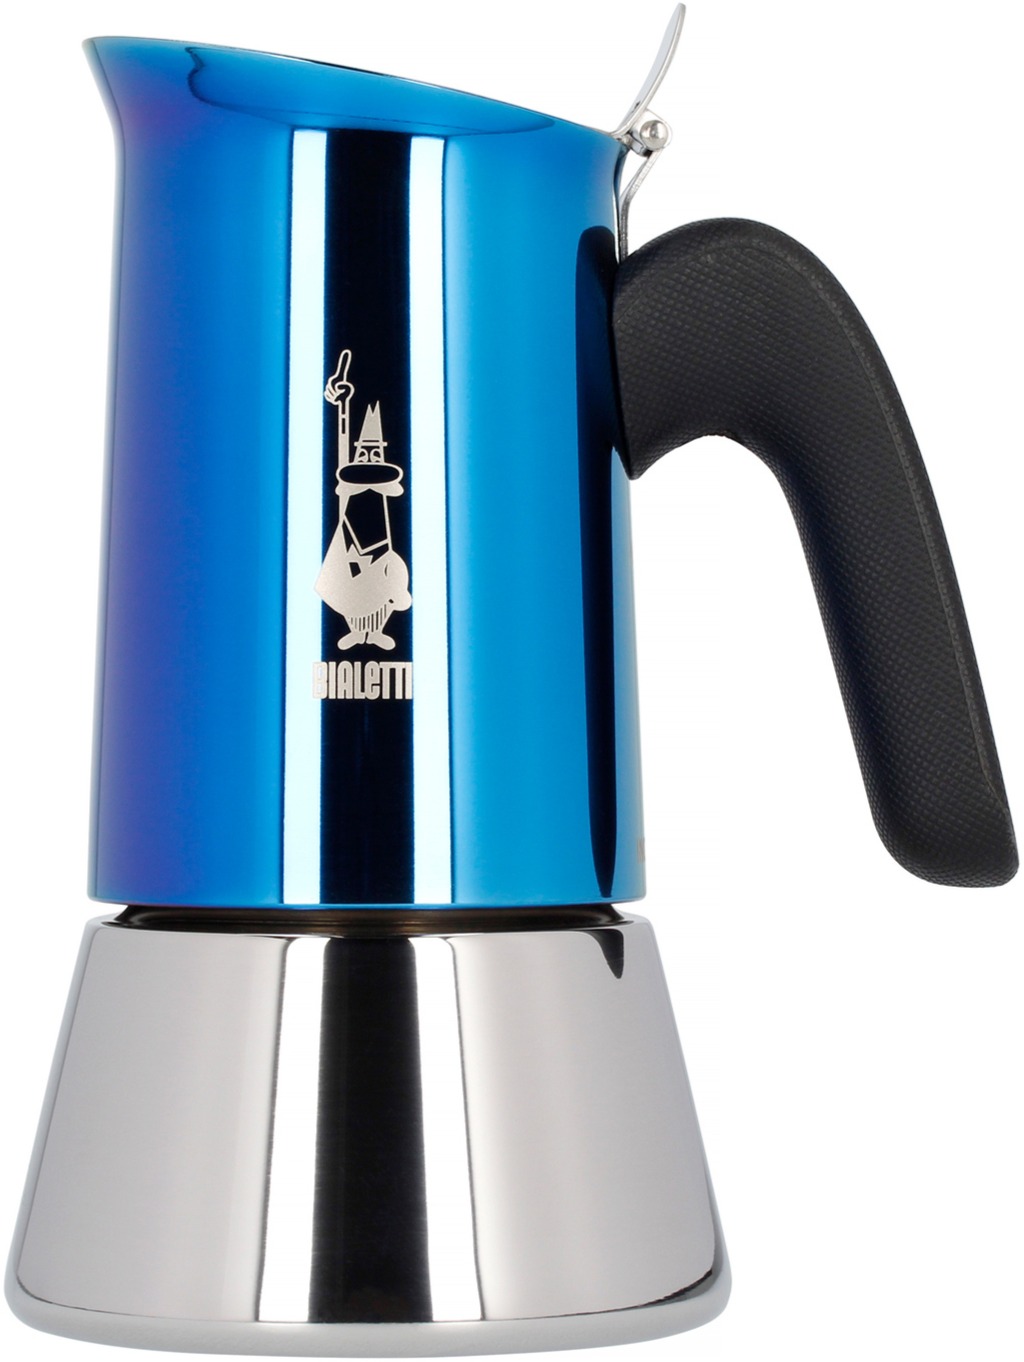 Bialetti Venus Stovetop Espresso Maker, Blue - Crema